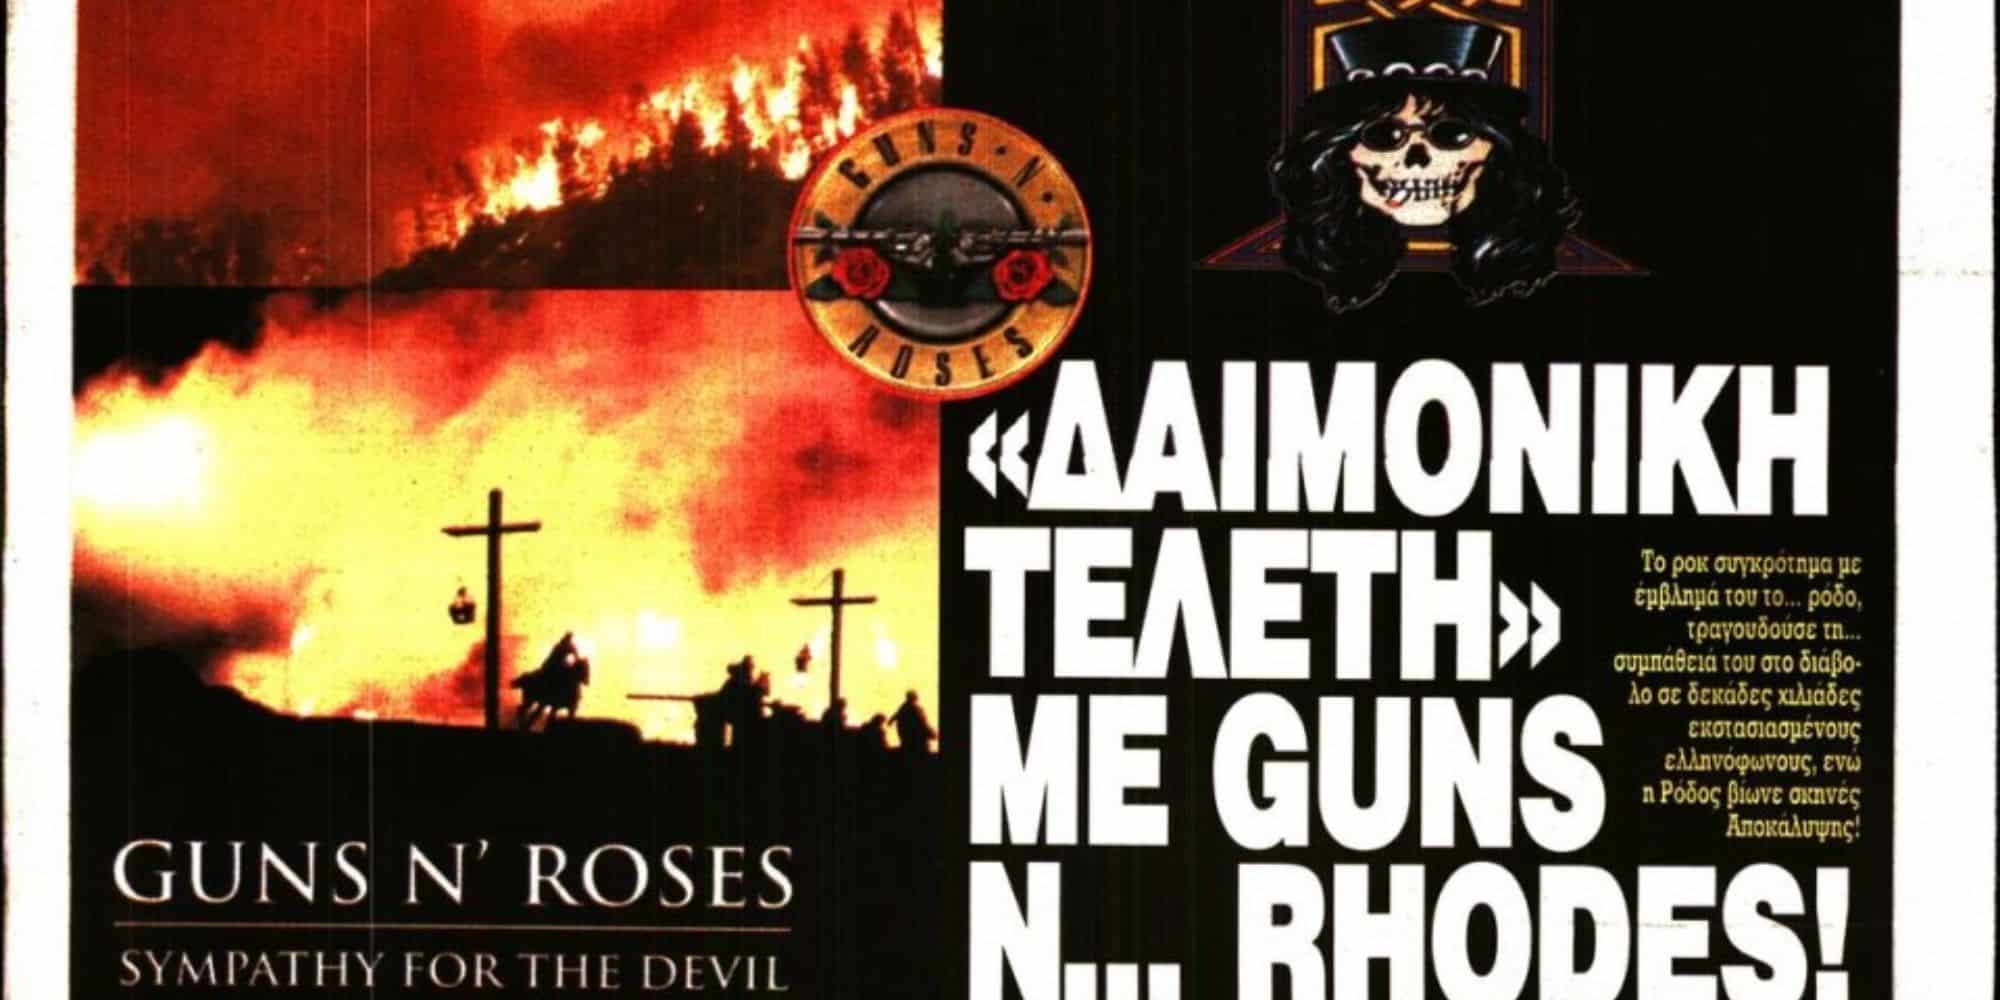 Eleftheri ora guns 24 7 23 - Επικό πρωτοσέλιδο: Η «Ελεύθερη Ώρα»... βλέπει τους Guns N' Roses πίσω από την φωτιά στην Ρόδο - «Δαιμονική τελετή» (εικόνα)